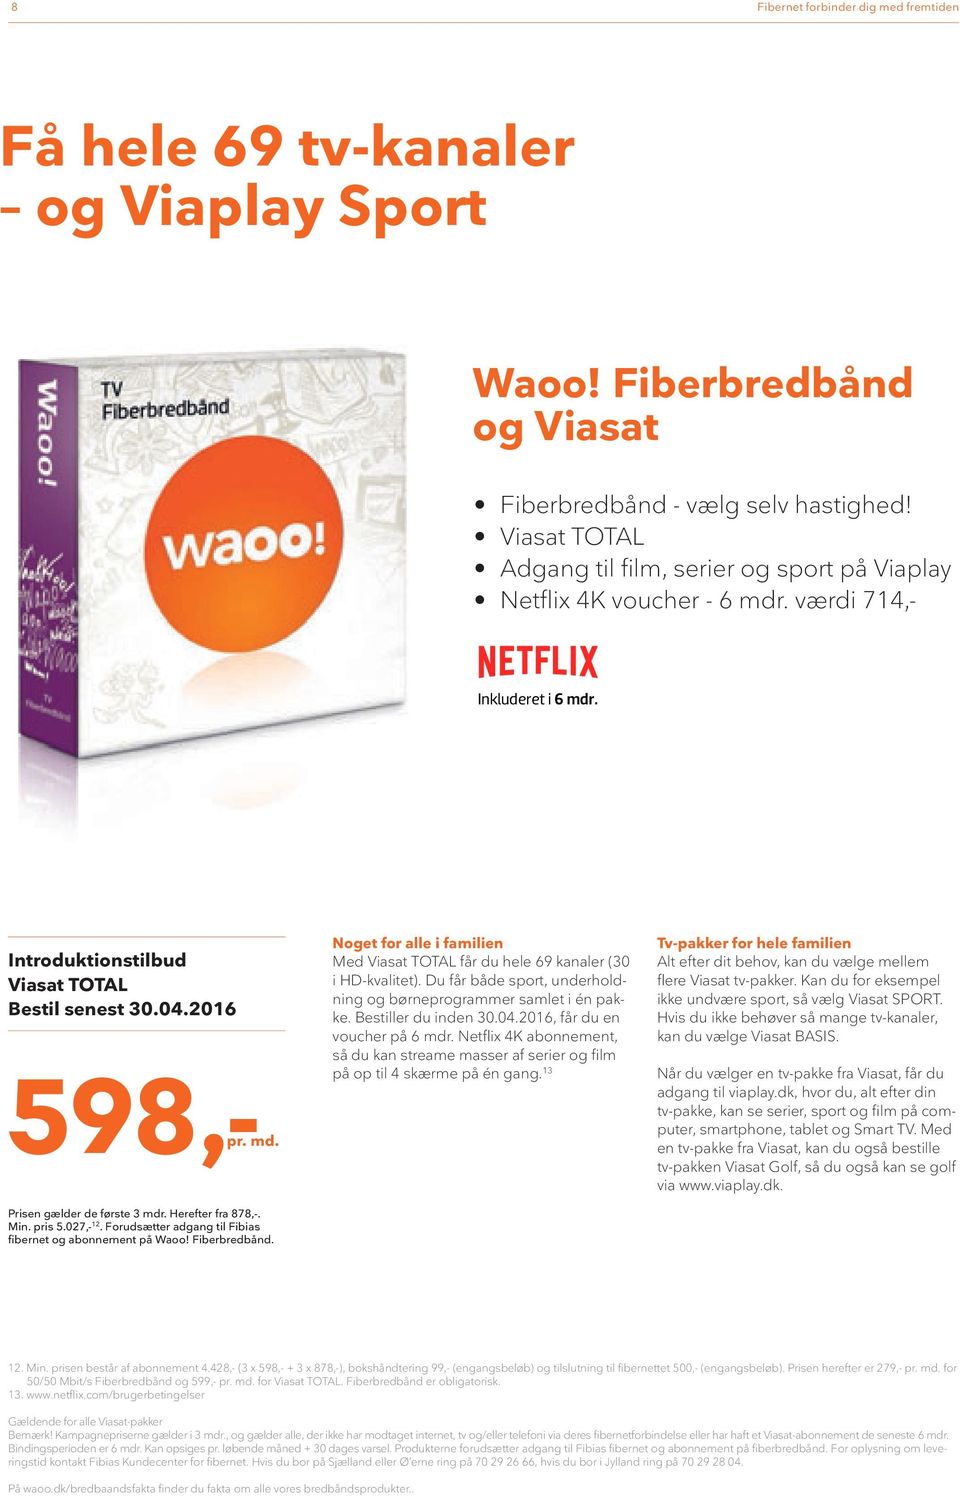 Forudsætter adgang til Fibias fibernet og abonnement på Waoo! Fiberbredbånd. Noget for alle i familien Med Viasat TOTAL får du hele 69 kanaler (30 i -kvalitet).